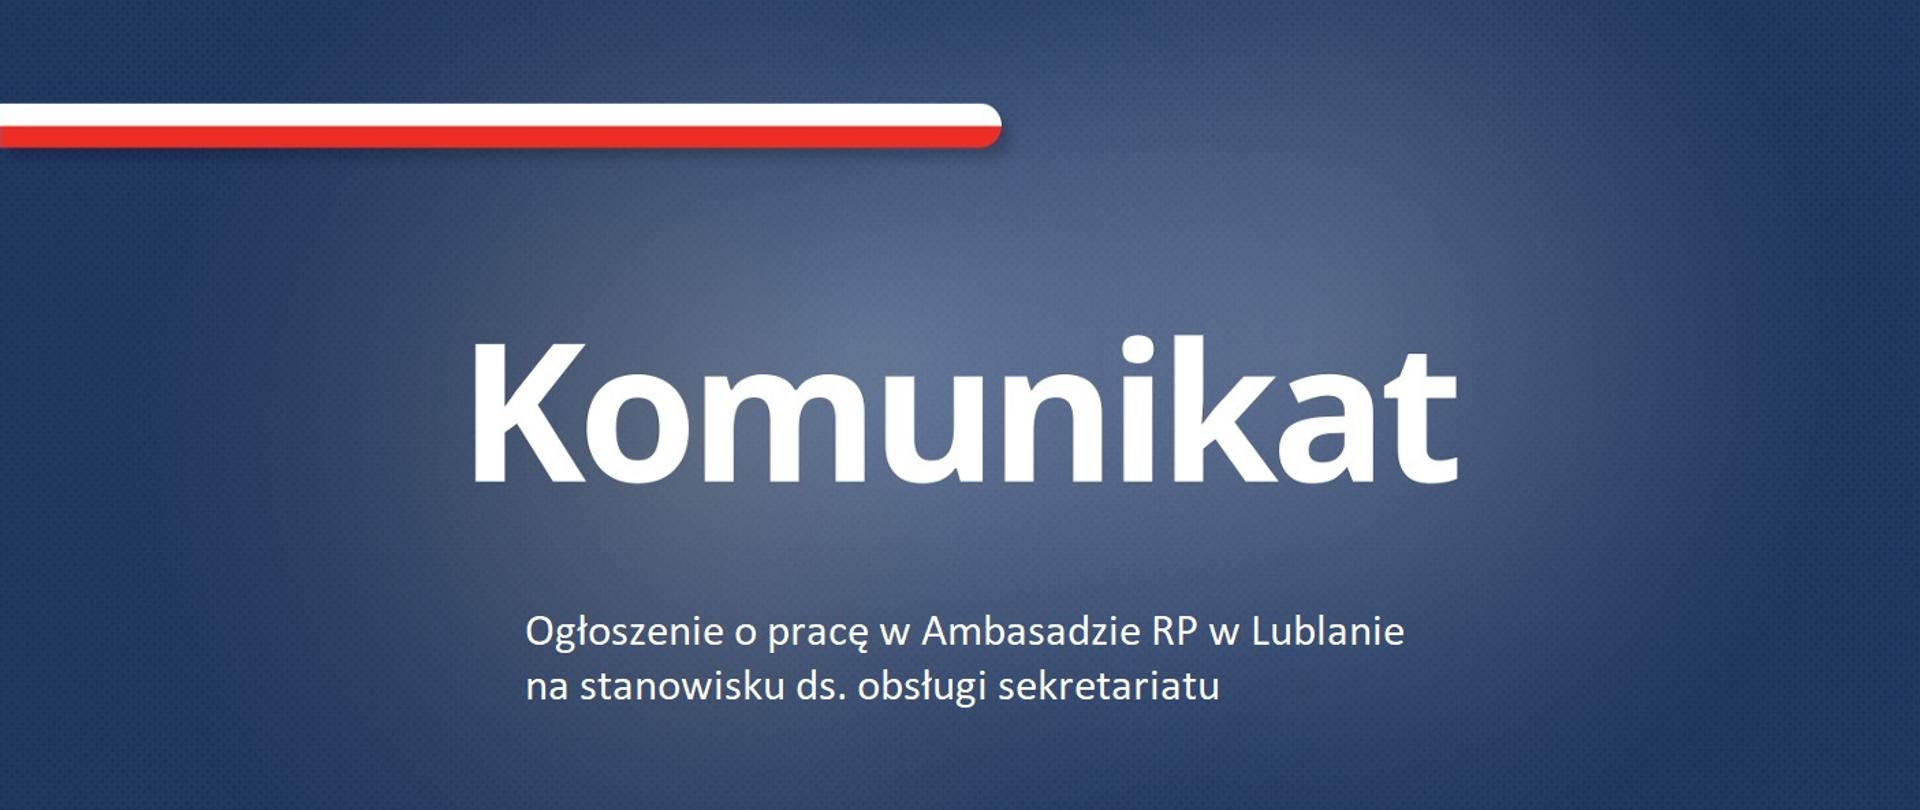 Ogłoszenie o pracę w Ambasadzie RP w Lublanie na stanowisku ds. obsługi Sekretariatu